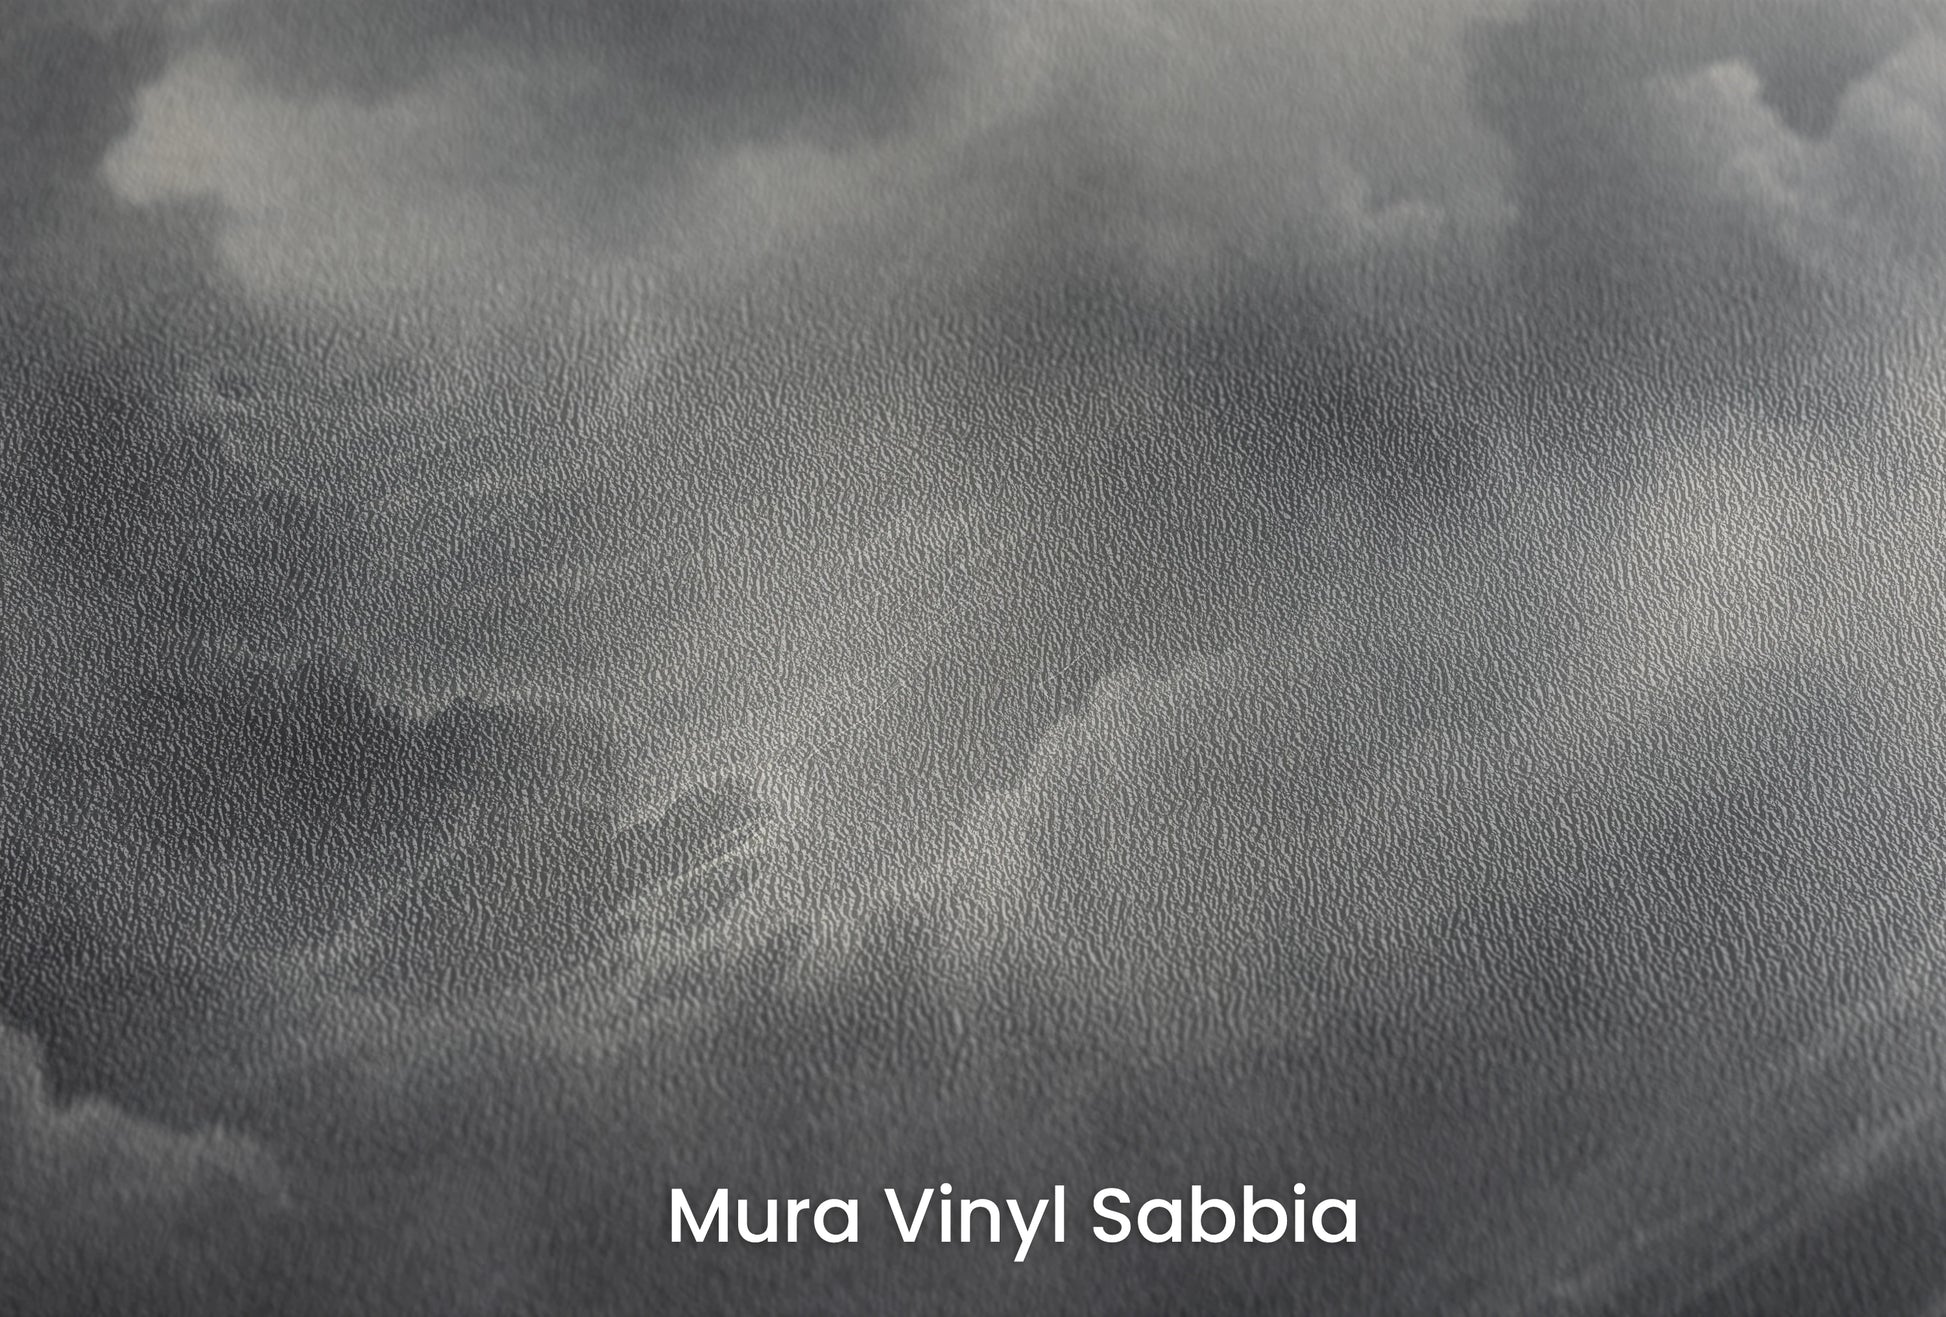 Zbliżenie na artystyczną fototapetę o nazwie Storm's Crescendo na podłożu Mura Vinyl Sabbia struktura grubego ziarna piasku.